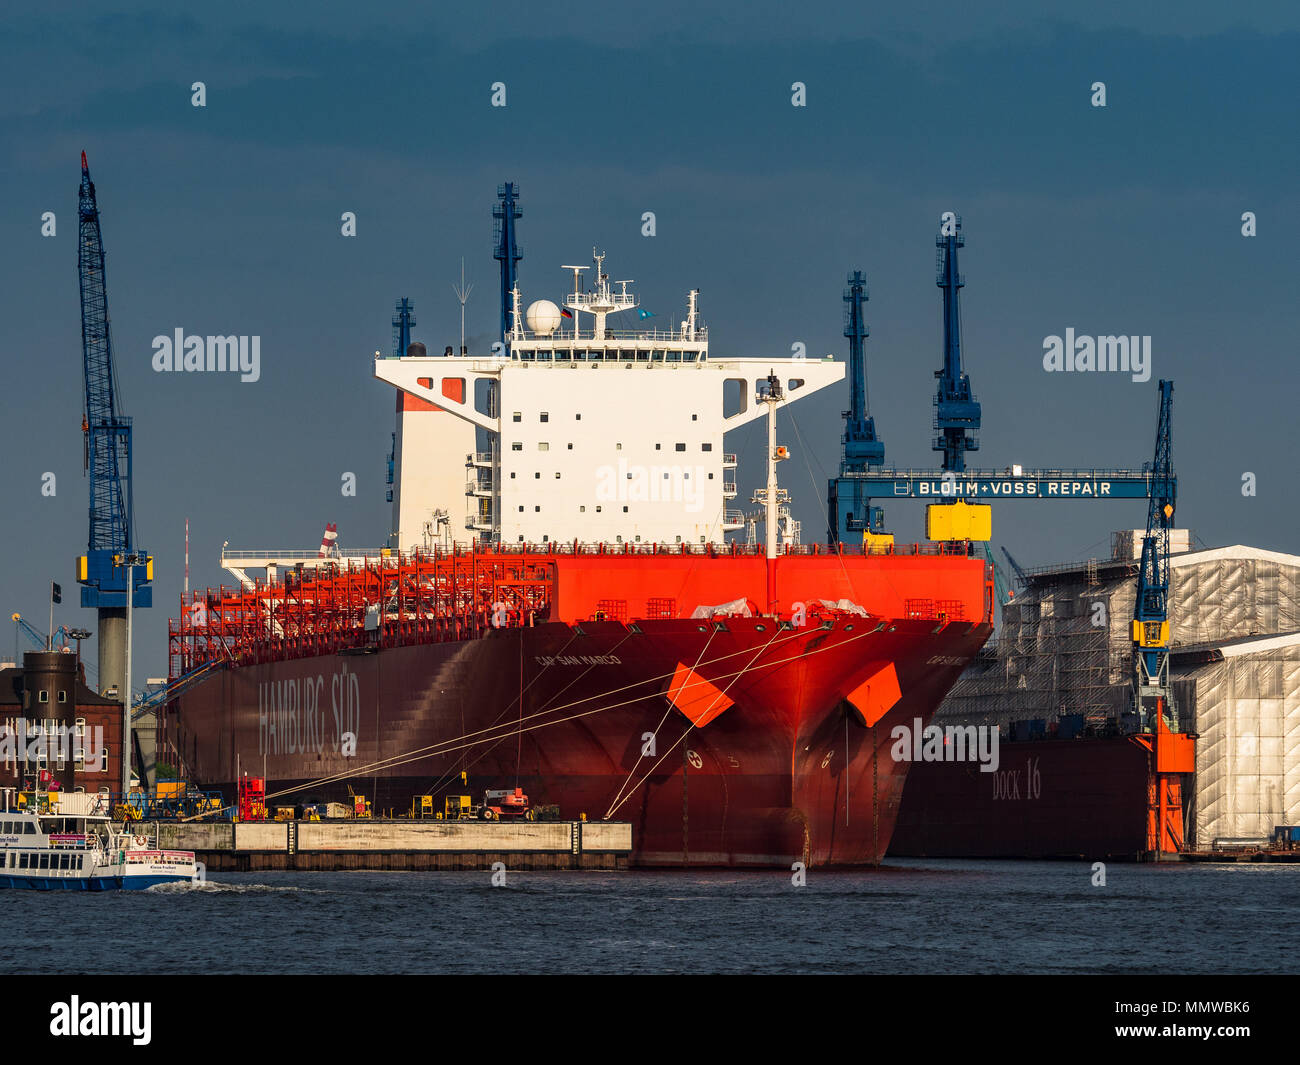 Blohm + Voss di Amburgo per la riparazione navale - Amburgo Sud contenitore tappo di nave San Marco al Blohm Voss + dry dock sul fiume Elba Foto Stock